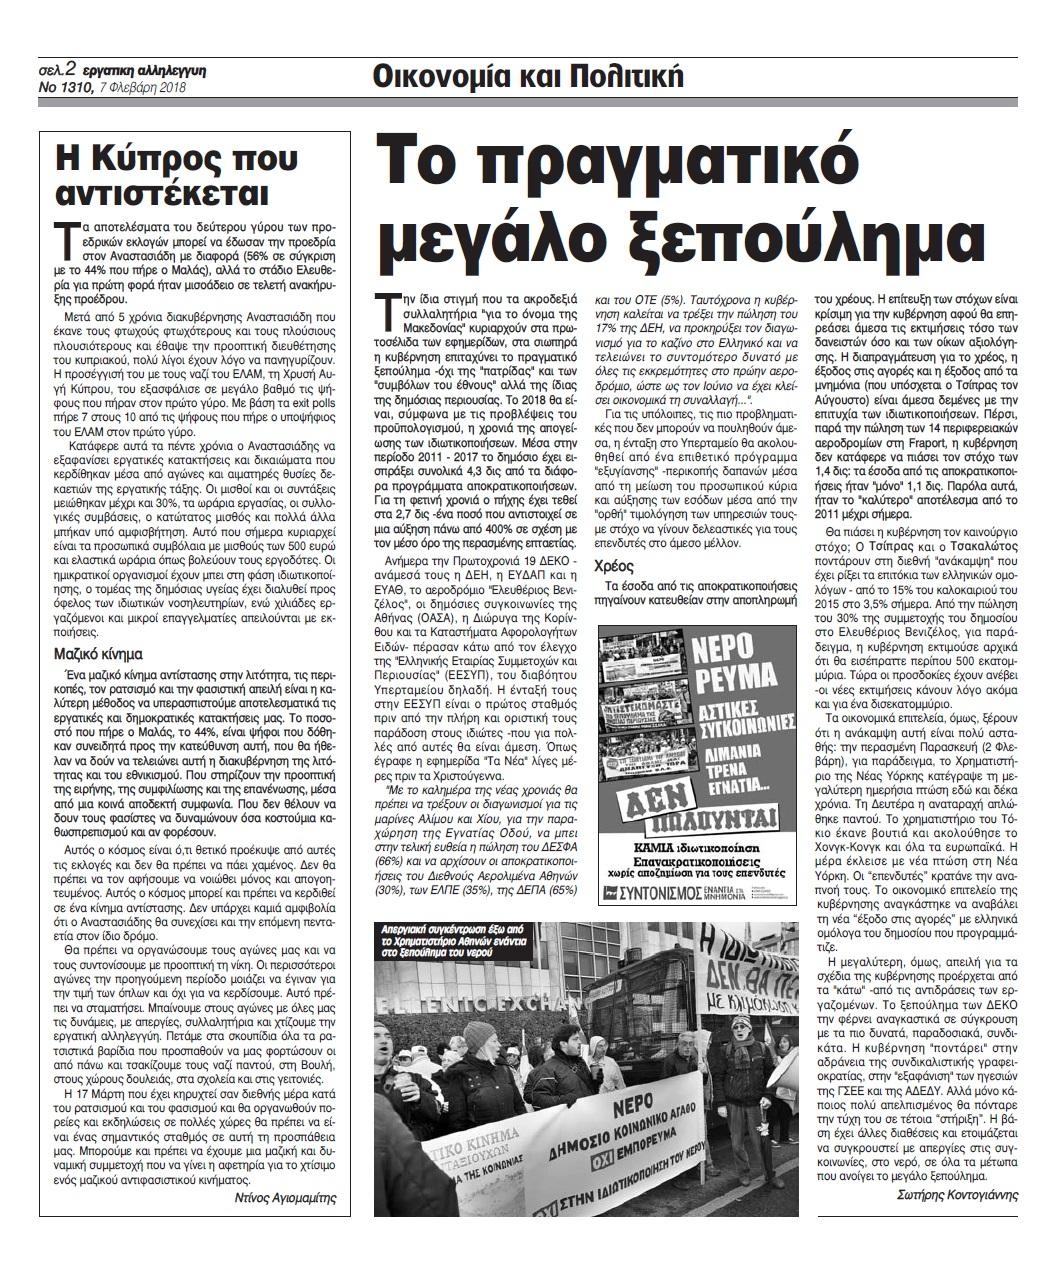 Οπισθόφυλλο εφημερίδας Εργατική Αλληλεγγύη